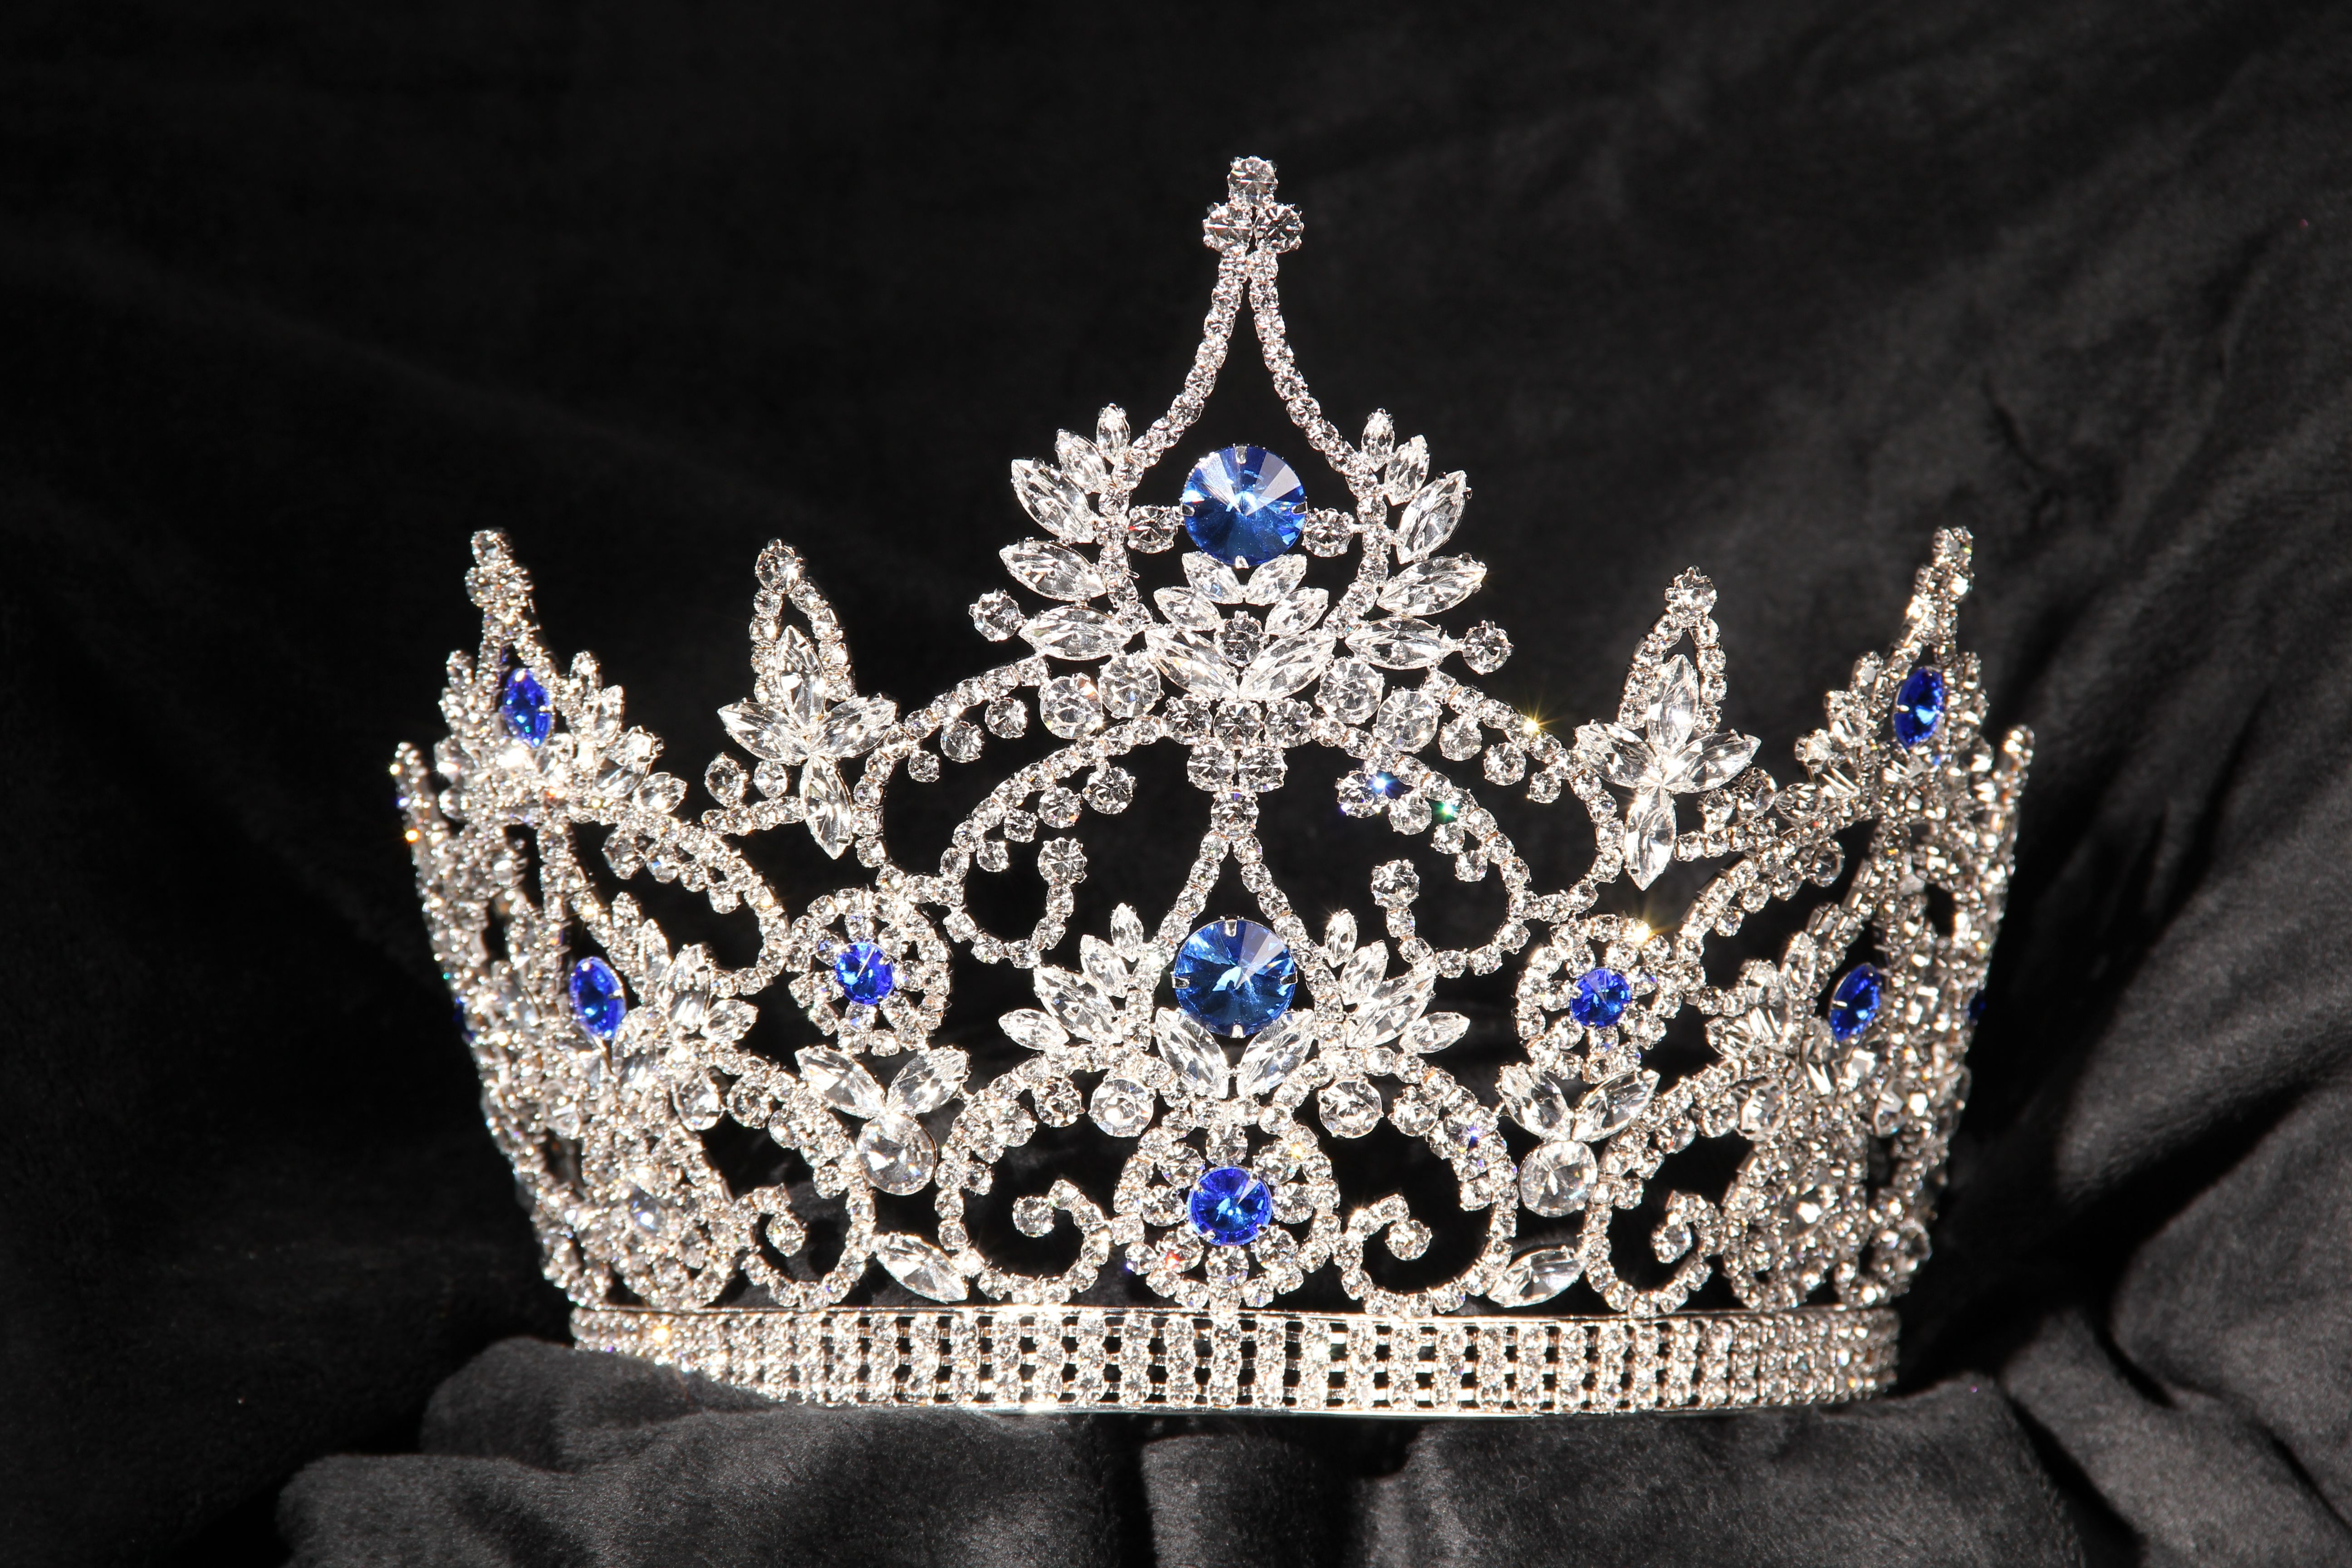 IMG_9585.jpg 5,184×3,456 pixels | Diamond Crowns | Pinterest | Crown ...